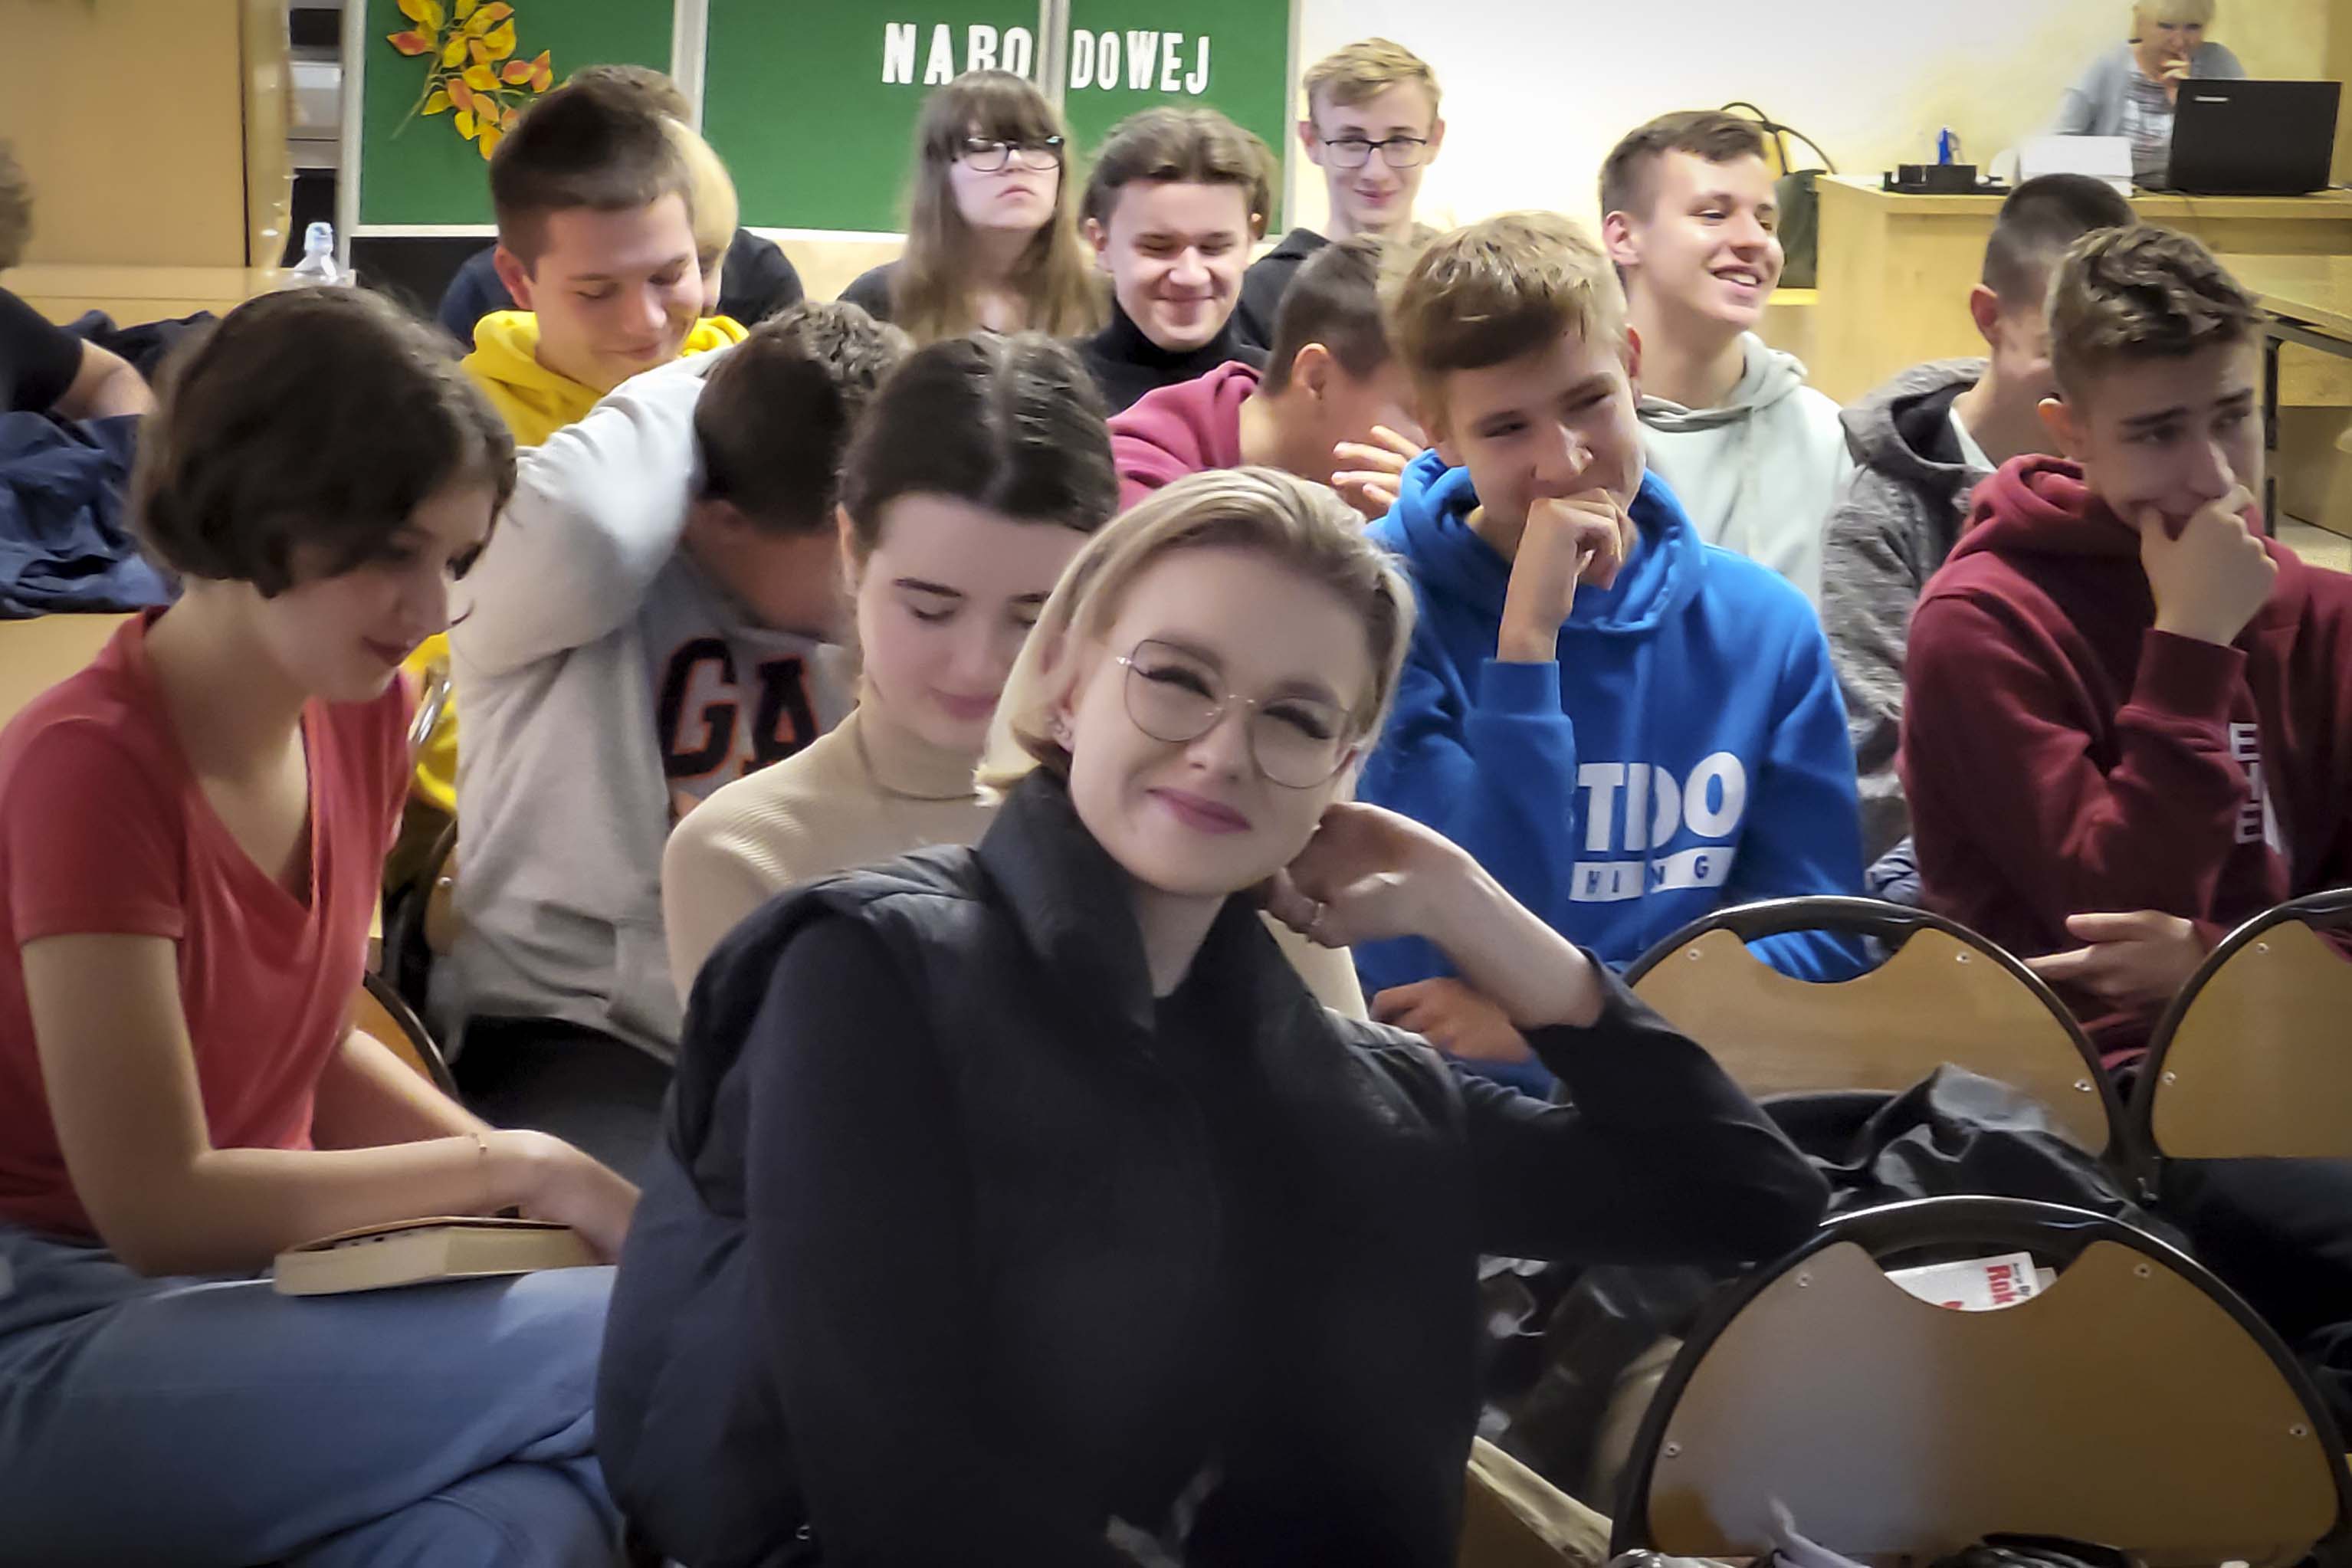 Uśmiechnięta dziewczyna w okularach siedzi na krześle patrzy w obiektyw w tle grupa dziewczyn i chłopców